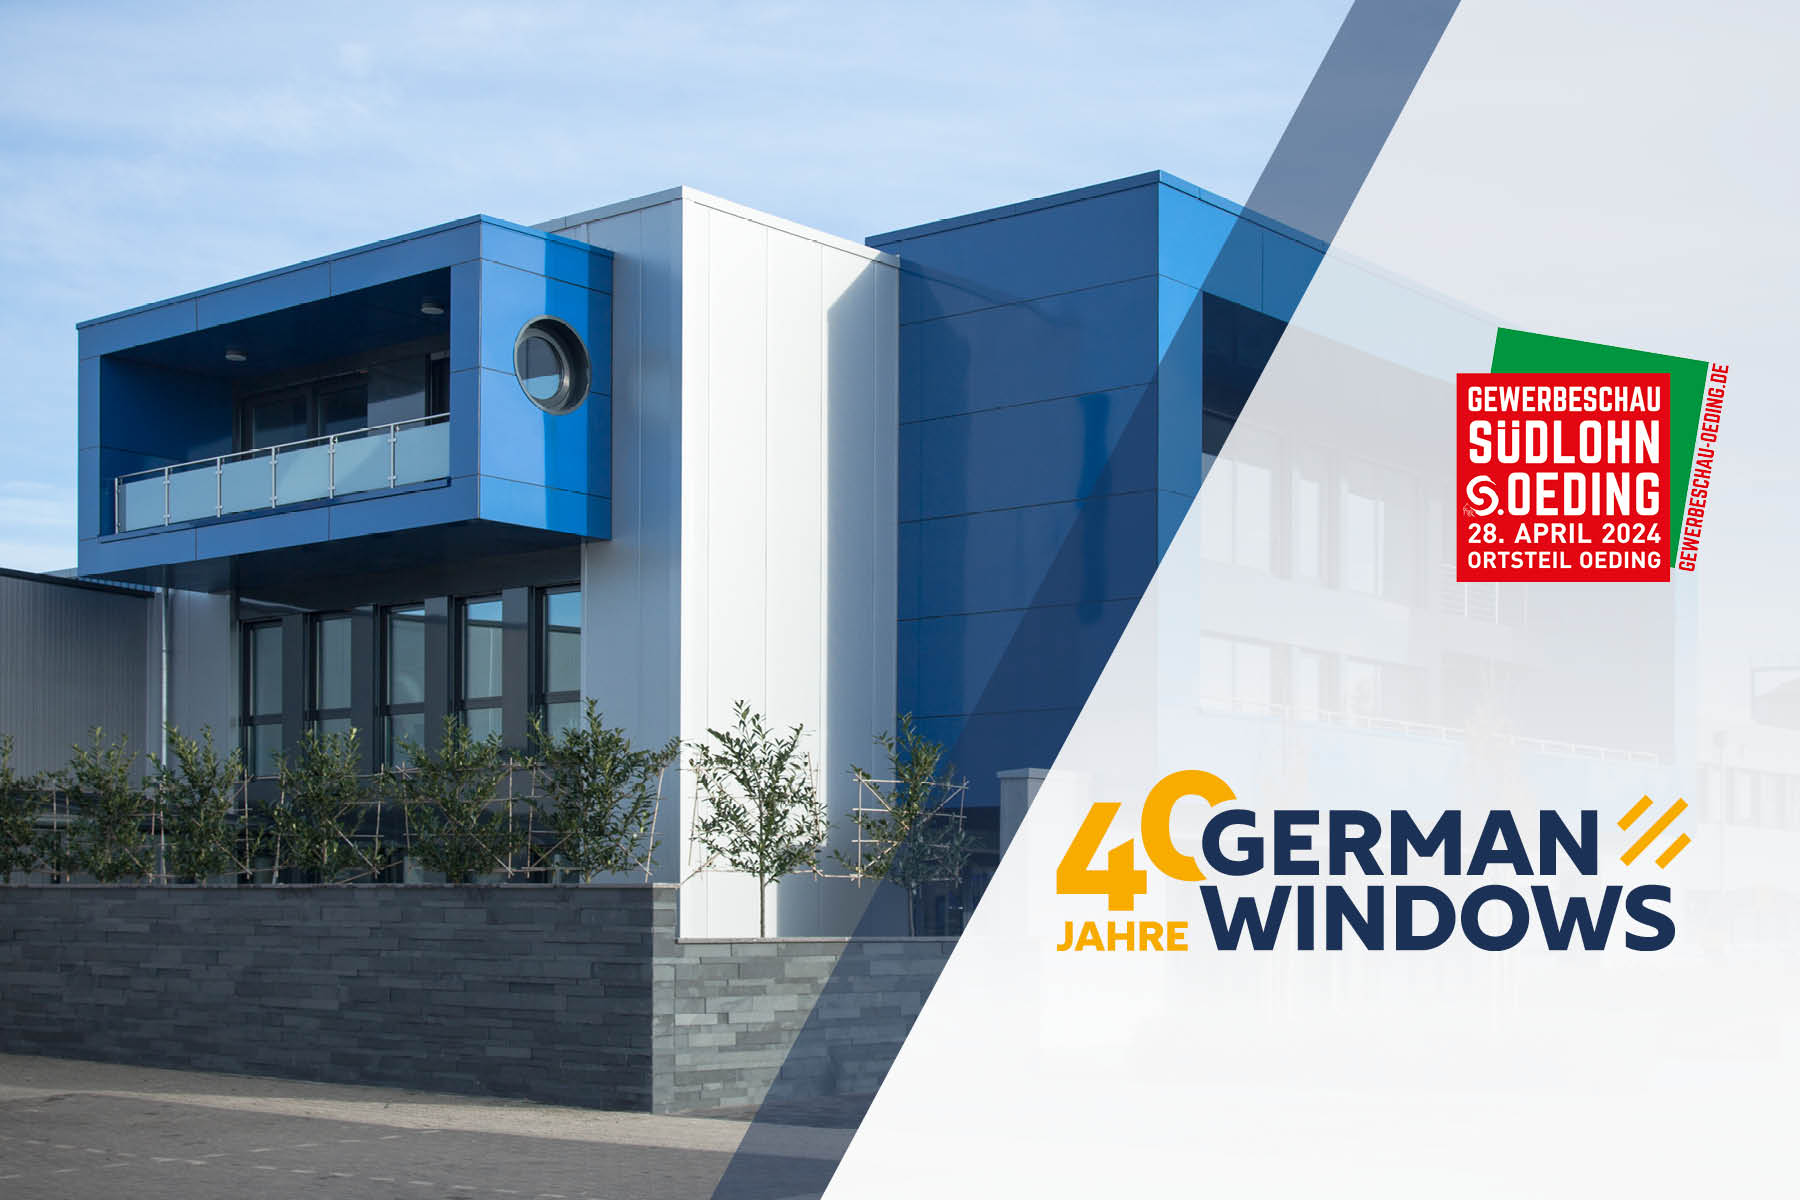 Moderne Architektur des Firmengebäudes von German Windows mit blauen und weißen Fassadenelementen. Links im Bild ein Werbebanner für die Gewerbeschau Südlohn-Oeding und das Jubiläum '40 Jahre German Windows' vor einem klaren Himmel.